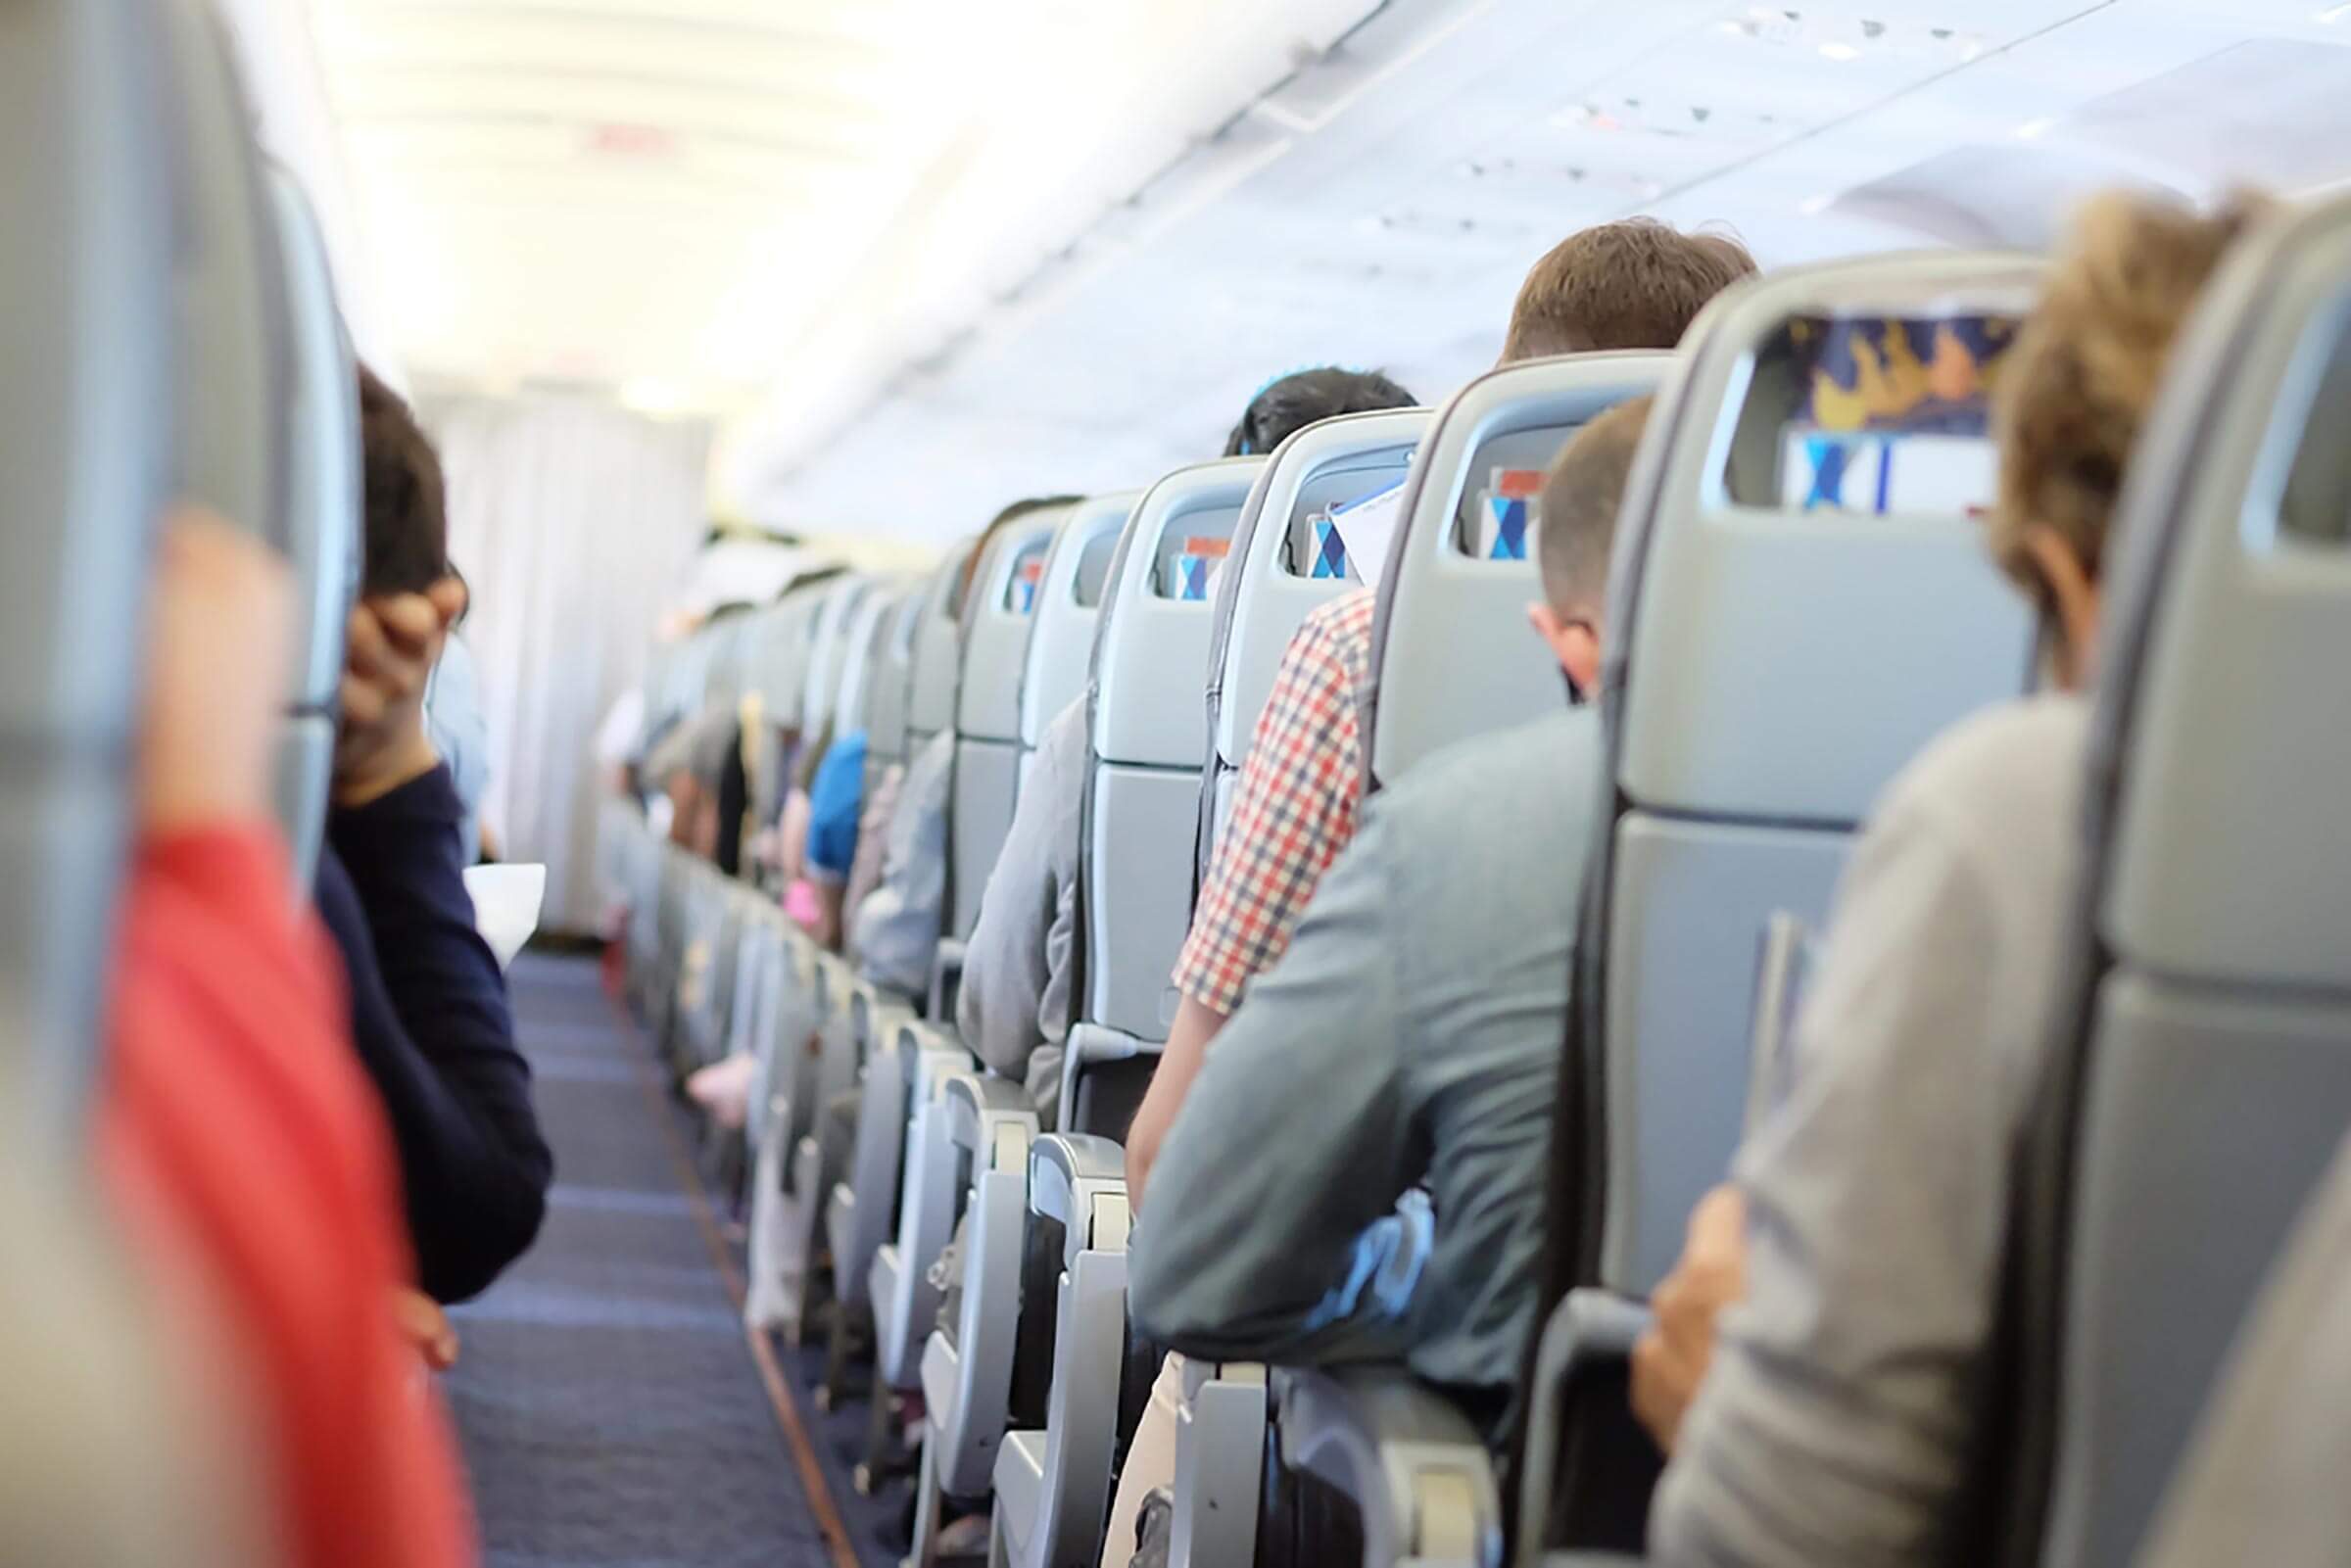 Reddit Is Debating Window Seat Bathroom Etiquette on Planes